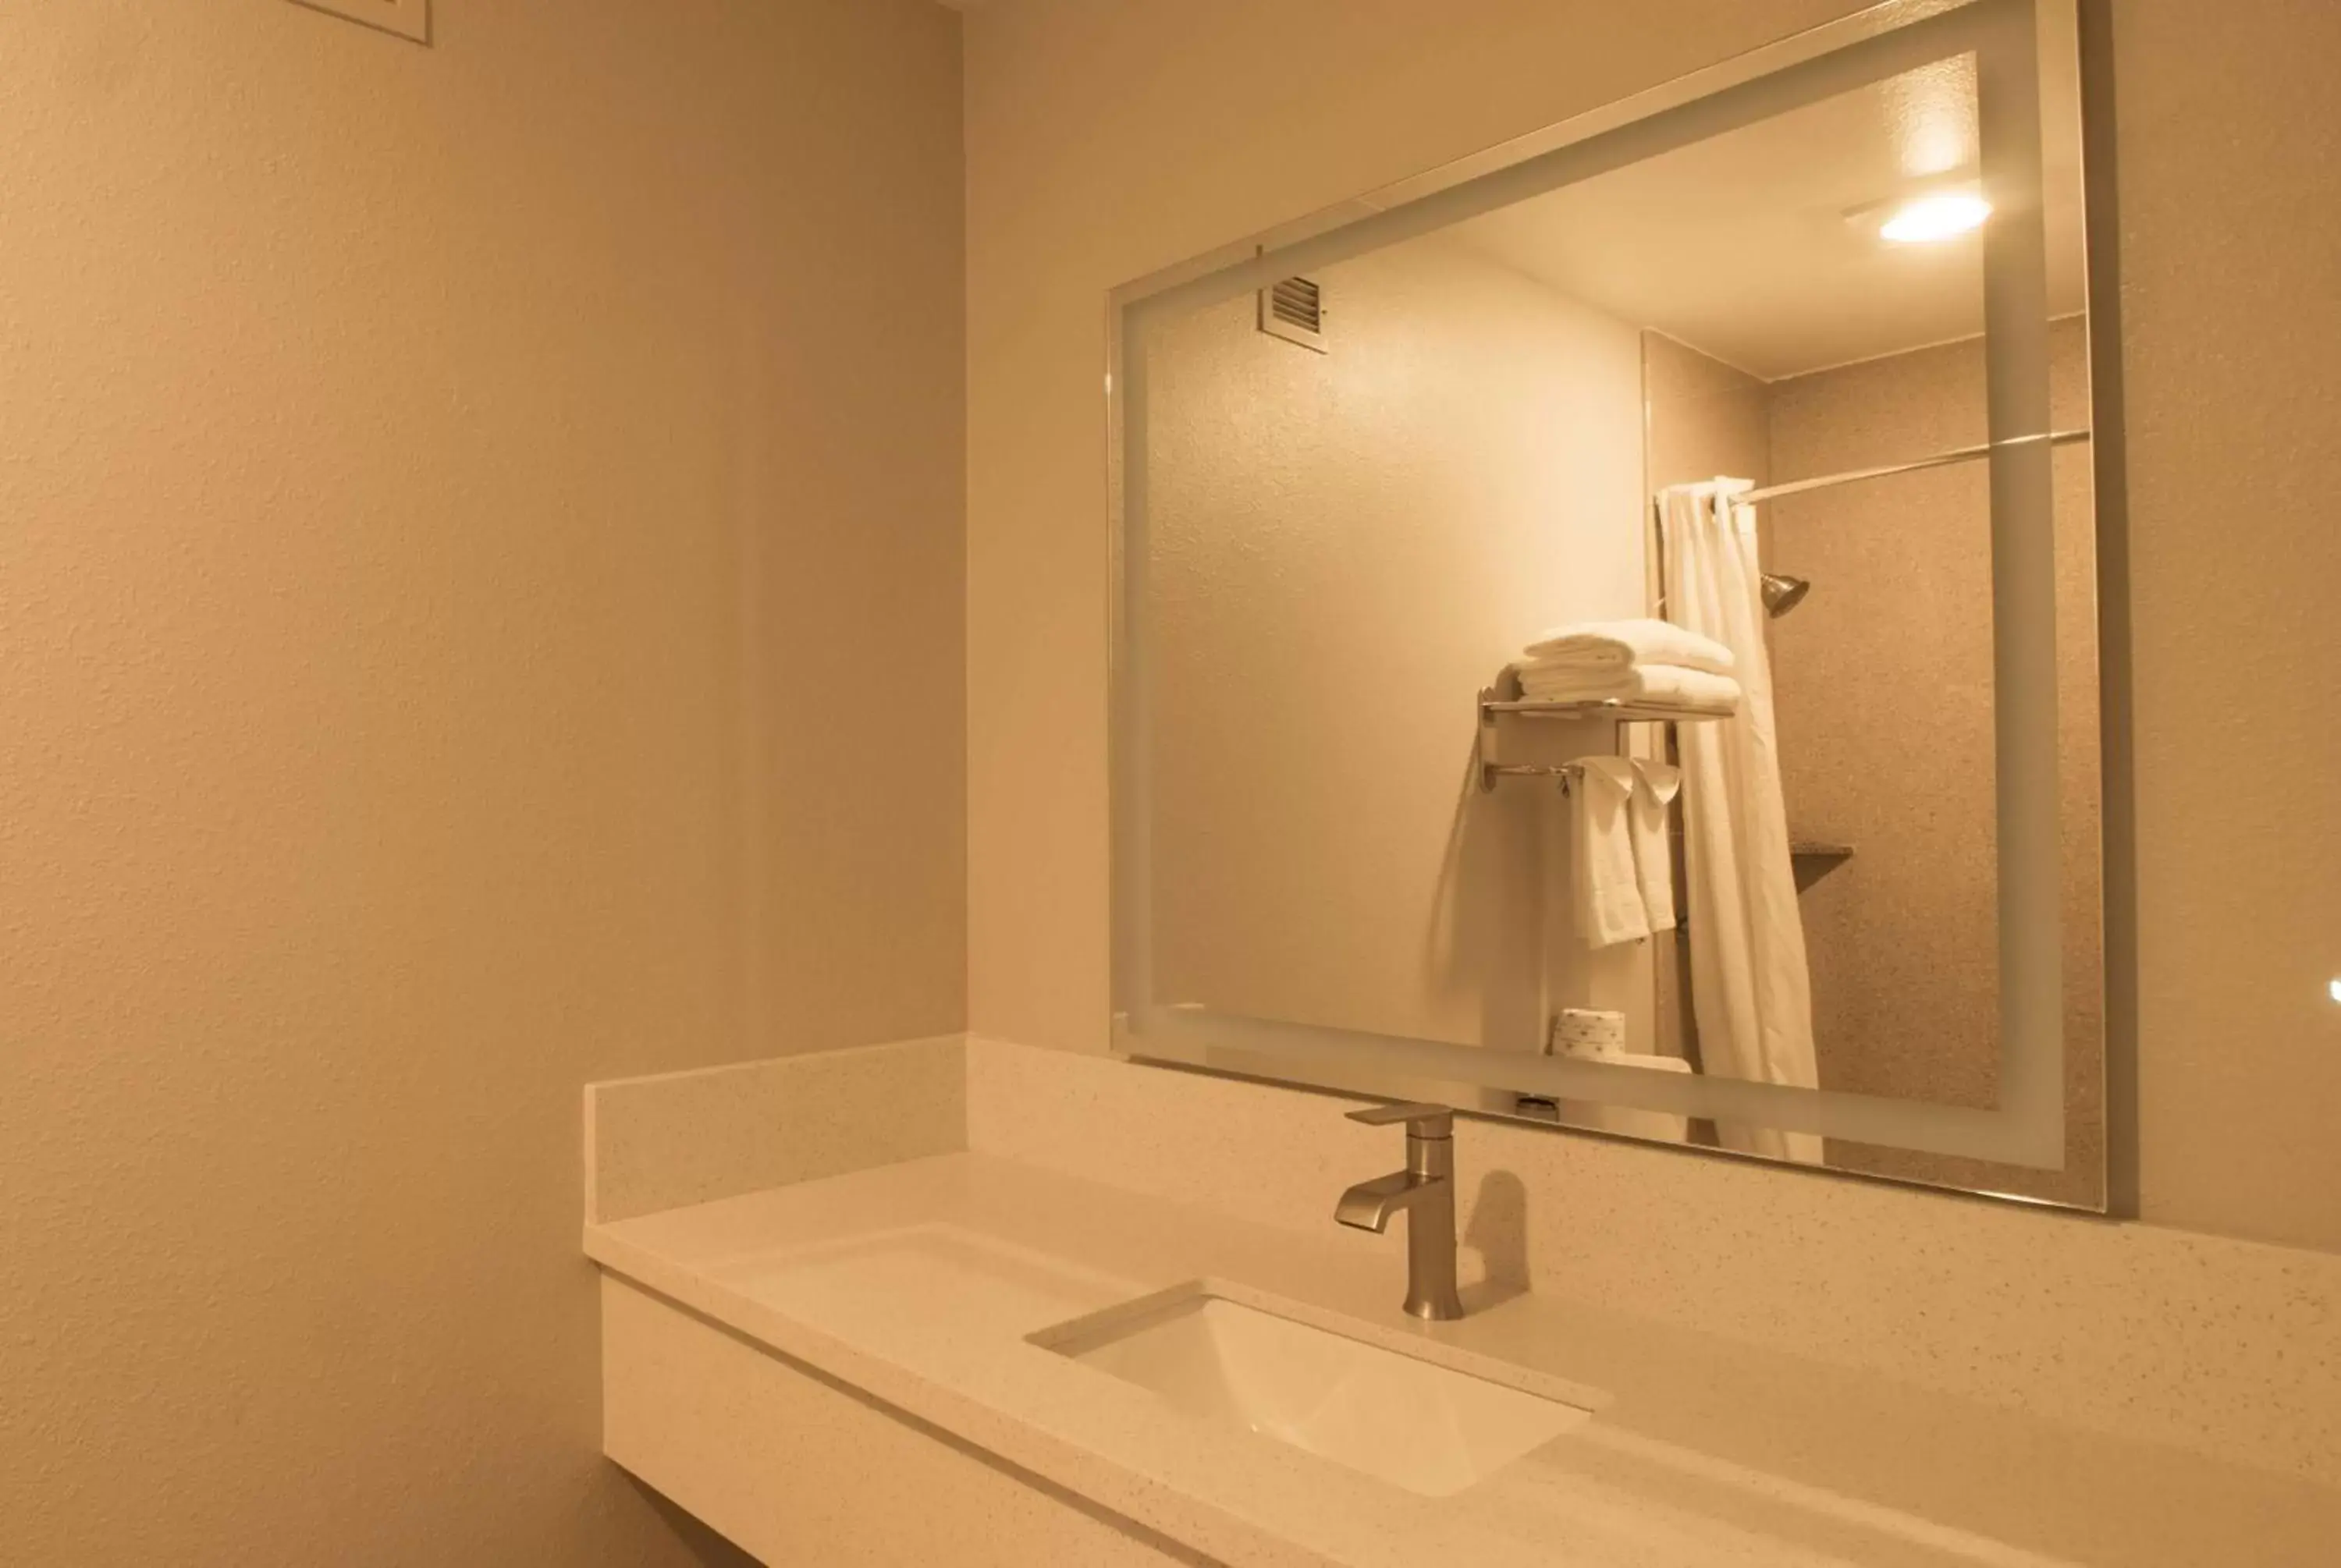 TV and multimedia, Bathroom in Days Inn by Wyndham Carlsbad